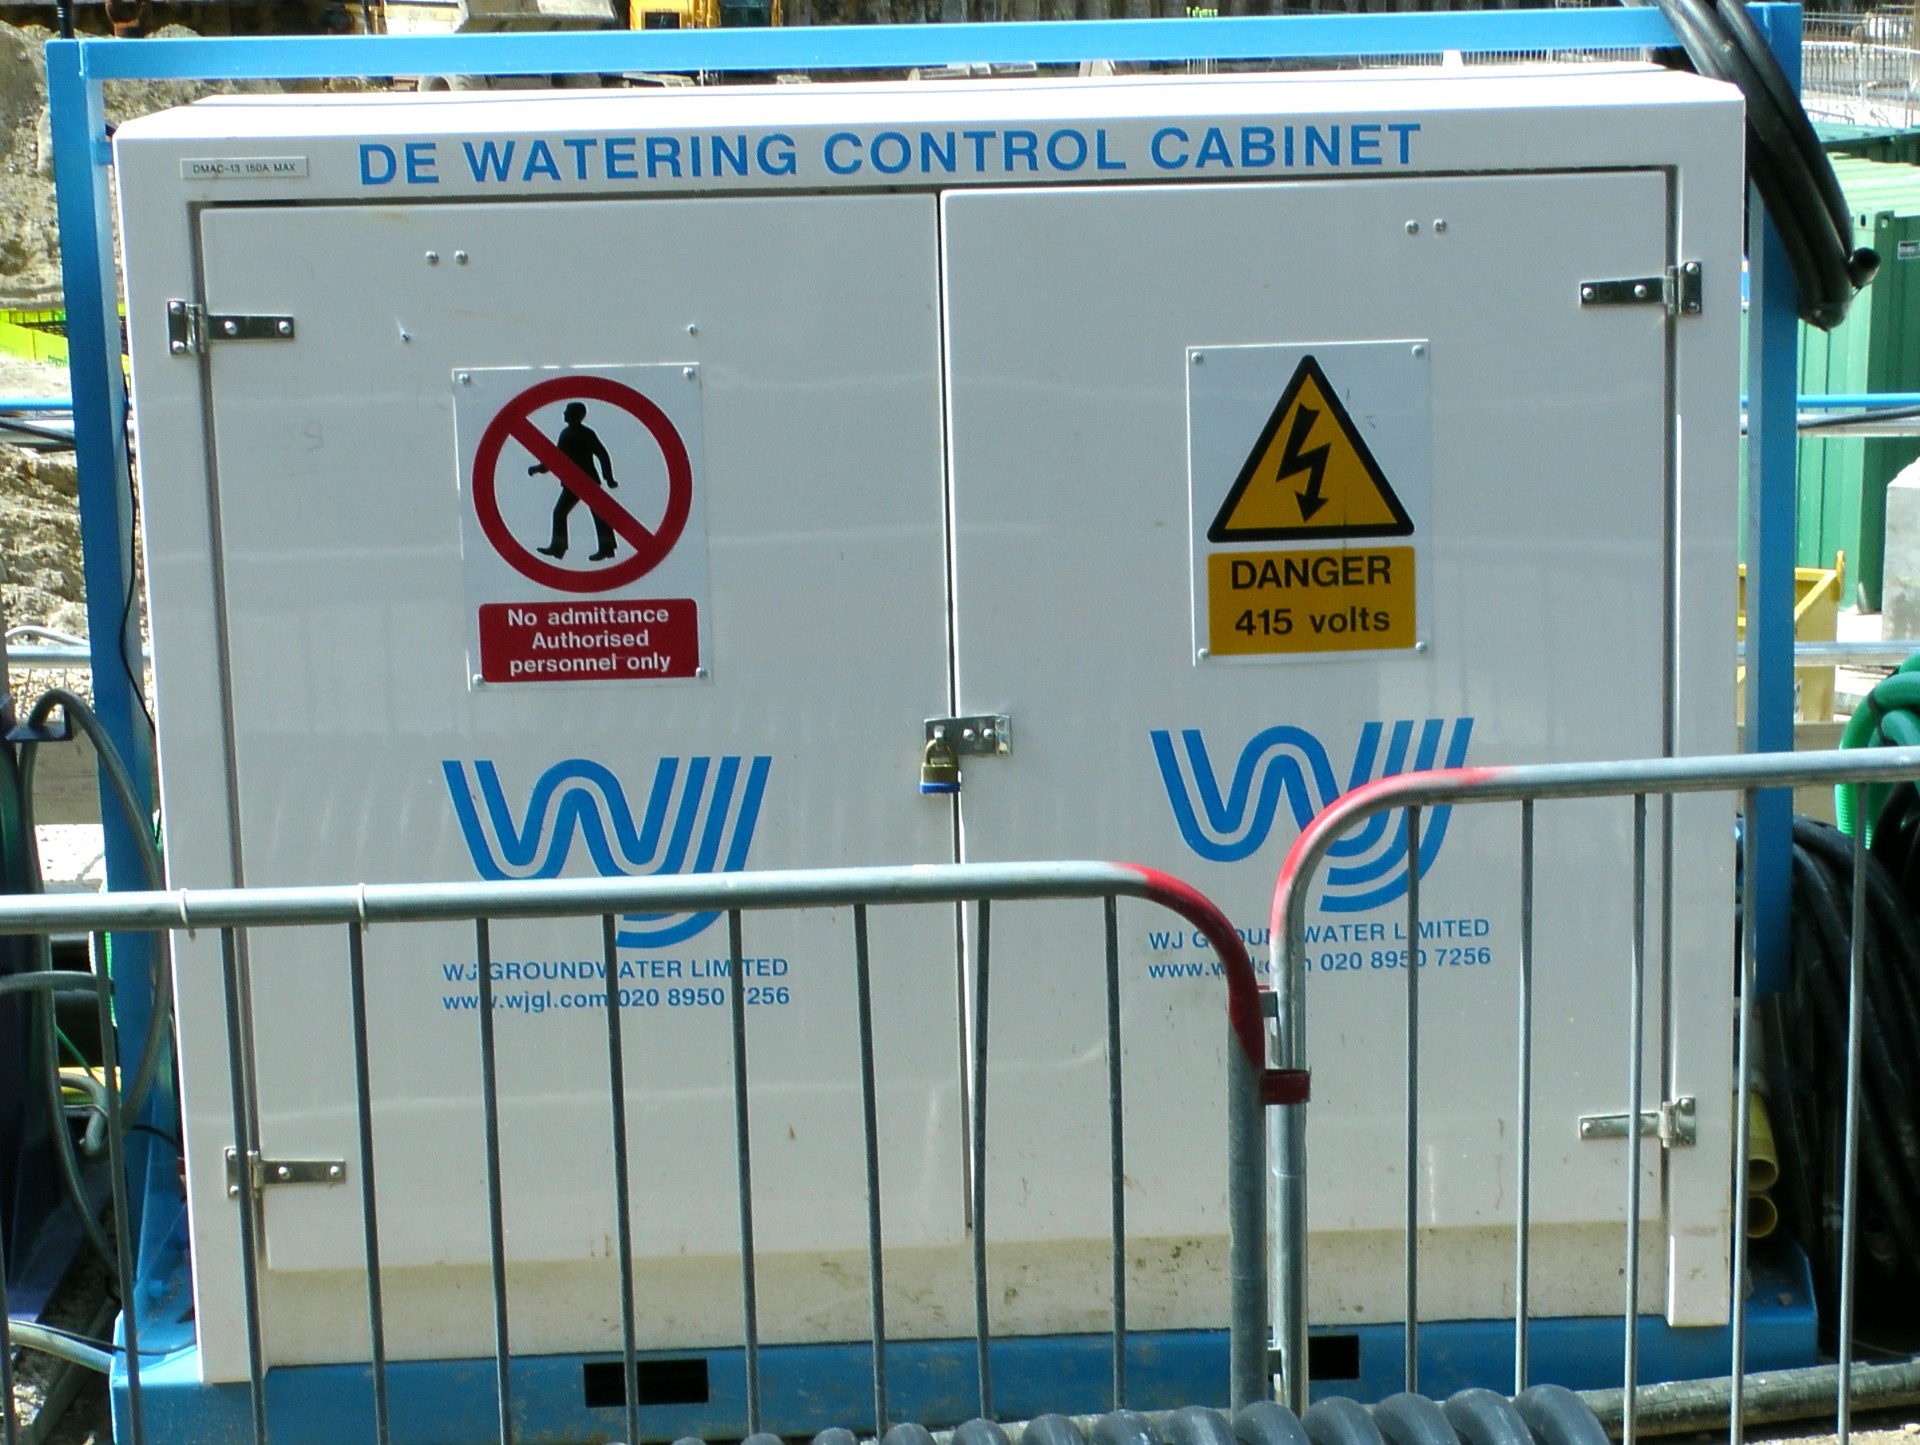 De Watering Control Cabinet